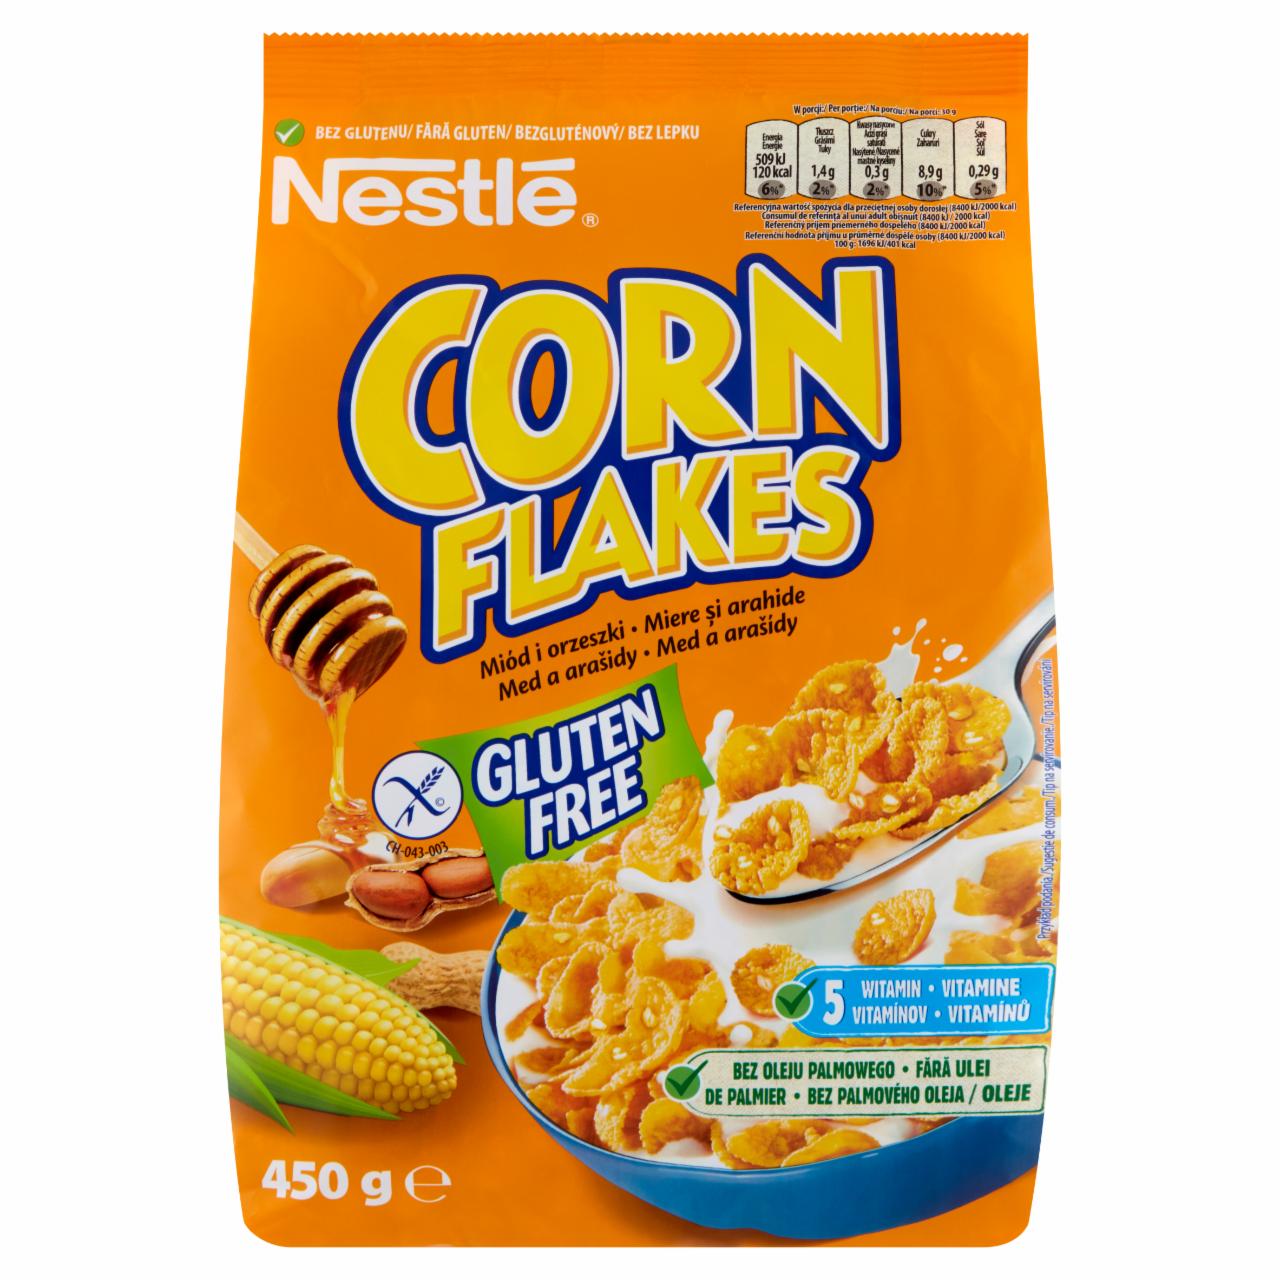 Zdjęcia - Corn Flakes Chrupiące płatki kukurydziane miód i orzeszki Nestlé